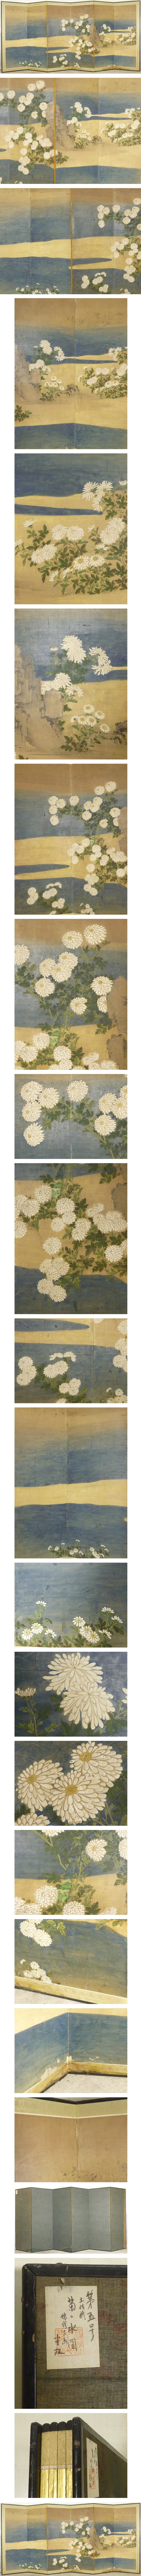 【数量限定低価】菊に水図 屏風 高さ 約169.5㎝ 六曲半双 紙本肉筆 無落款 花鳥 琳派 日本画 花鳥、鳥獣